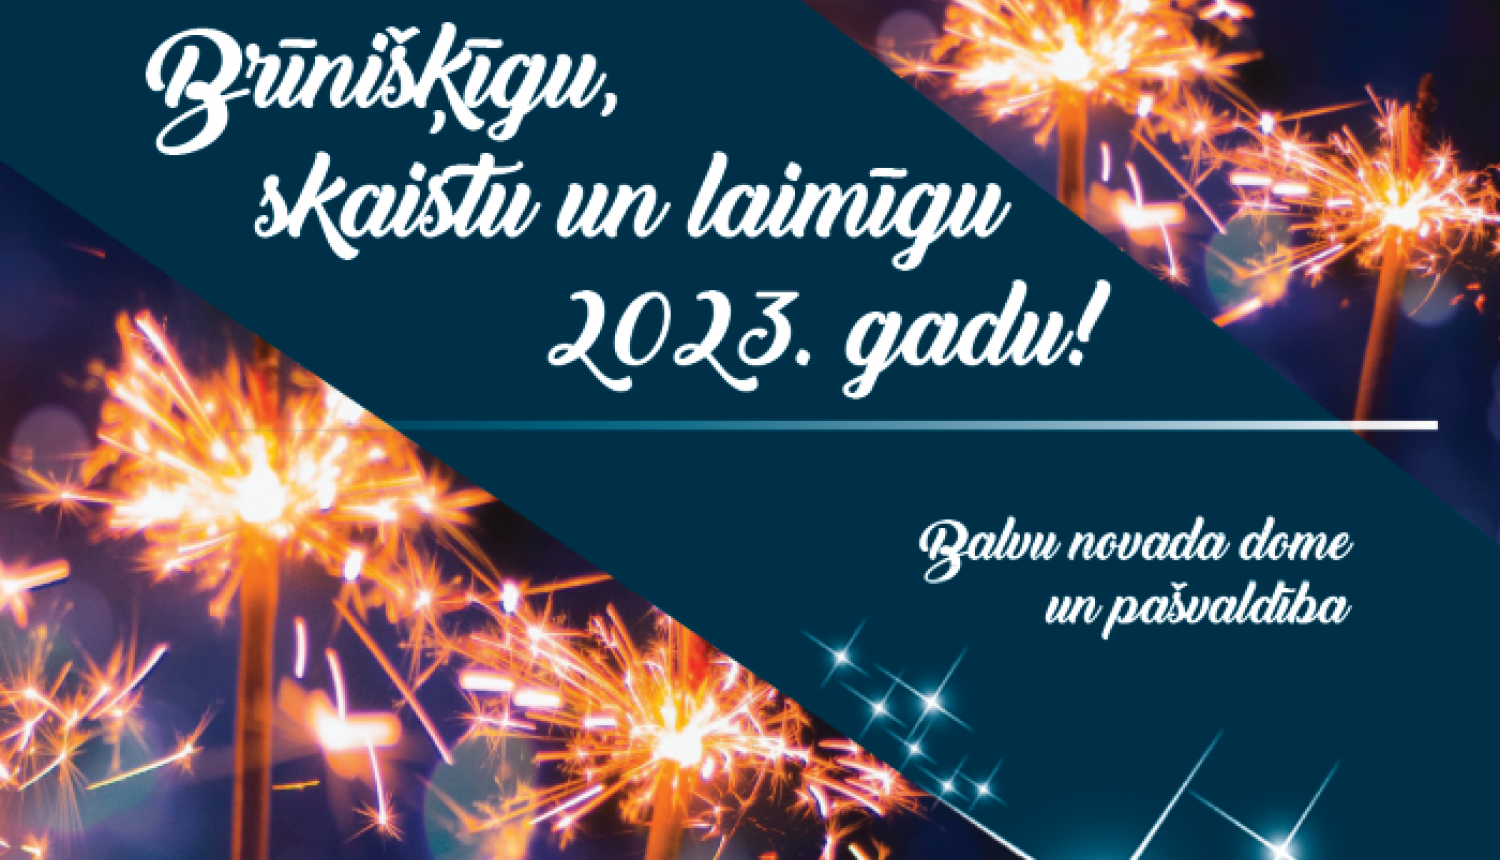 Laimīgu Jauno gadu!